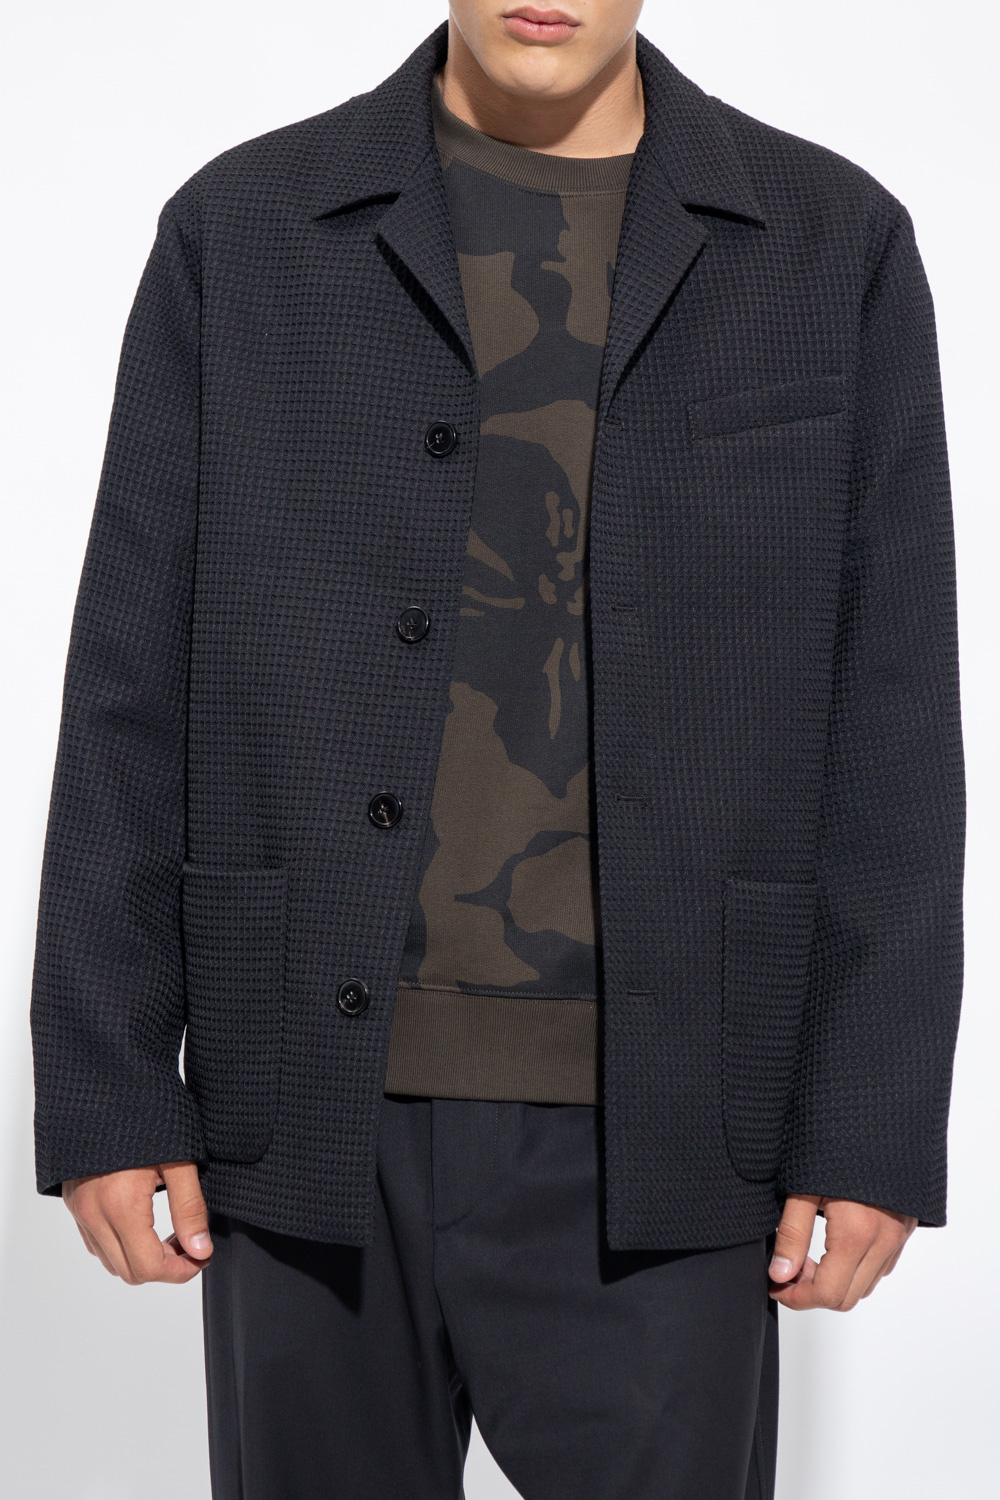 Dries Van Noten Textured blazer | Men's Clothing | Vitkac